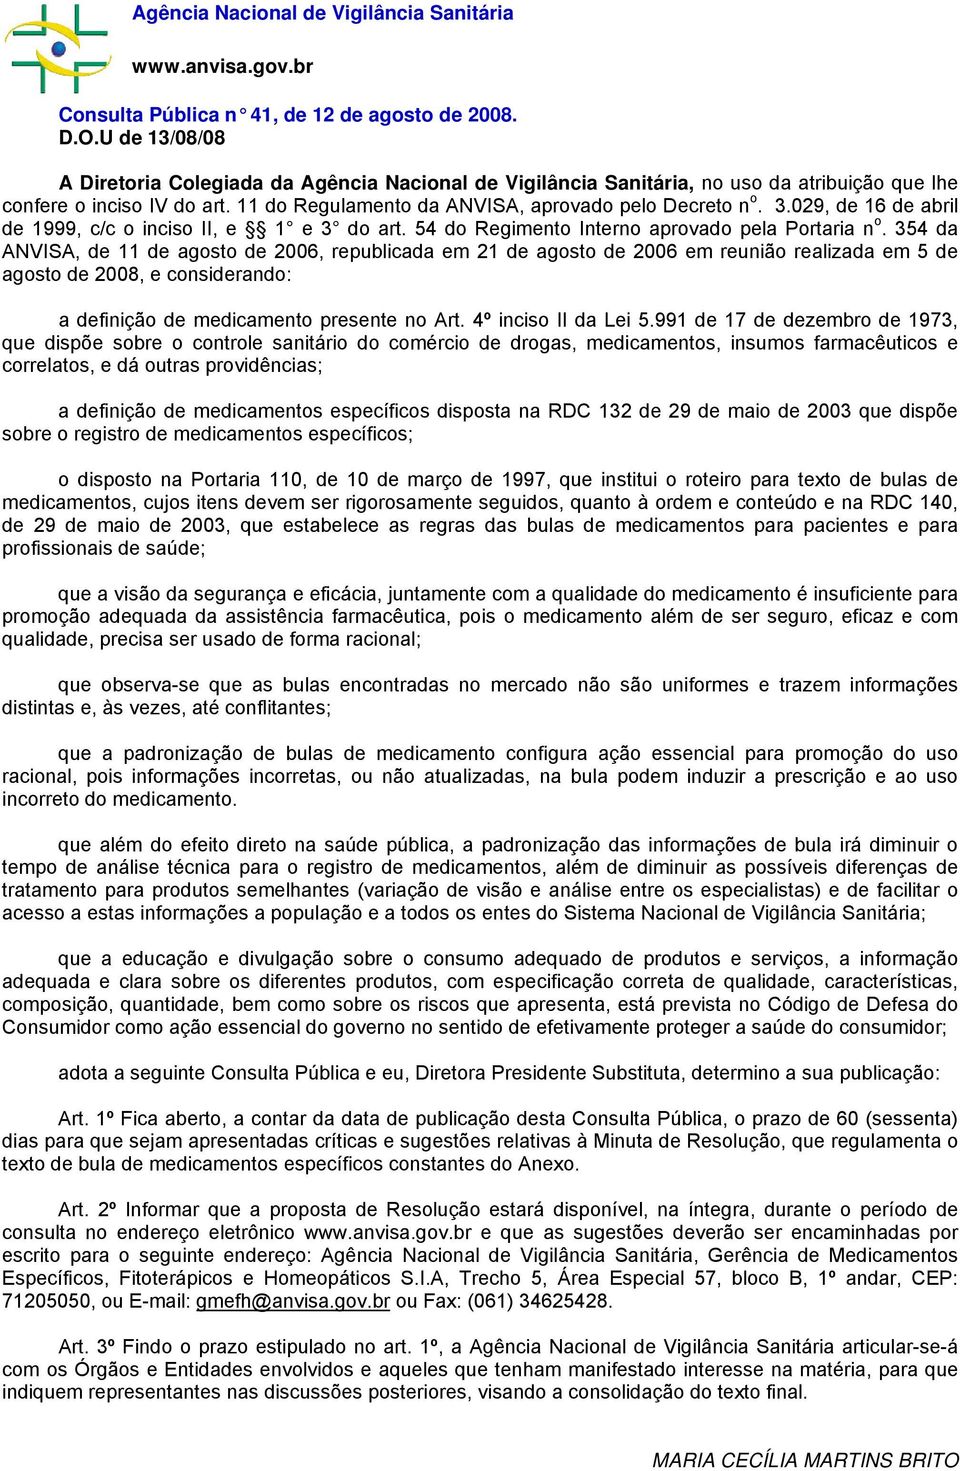 029, de 16 de abril de 1999, c/c o inciso II, e 1 e 3 do art. 54 do Regimento Interno aprovado pela Portaria n o.